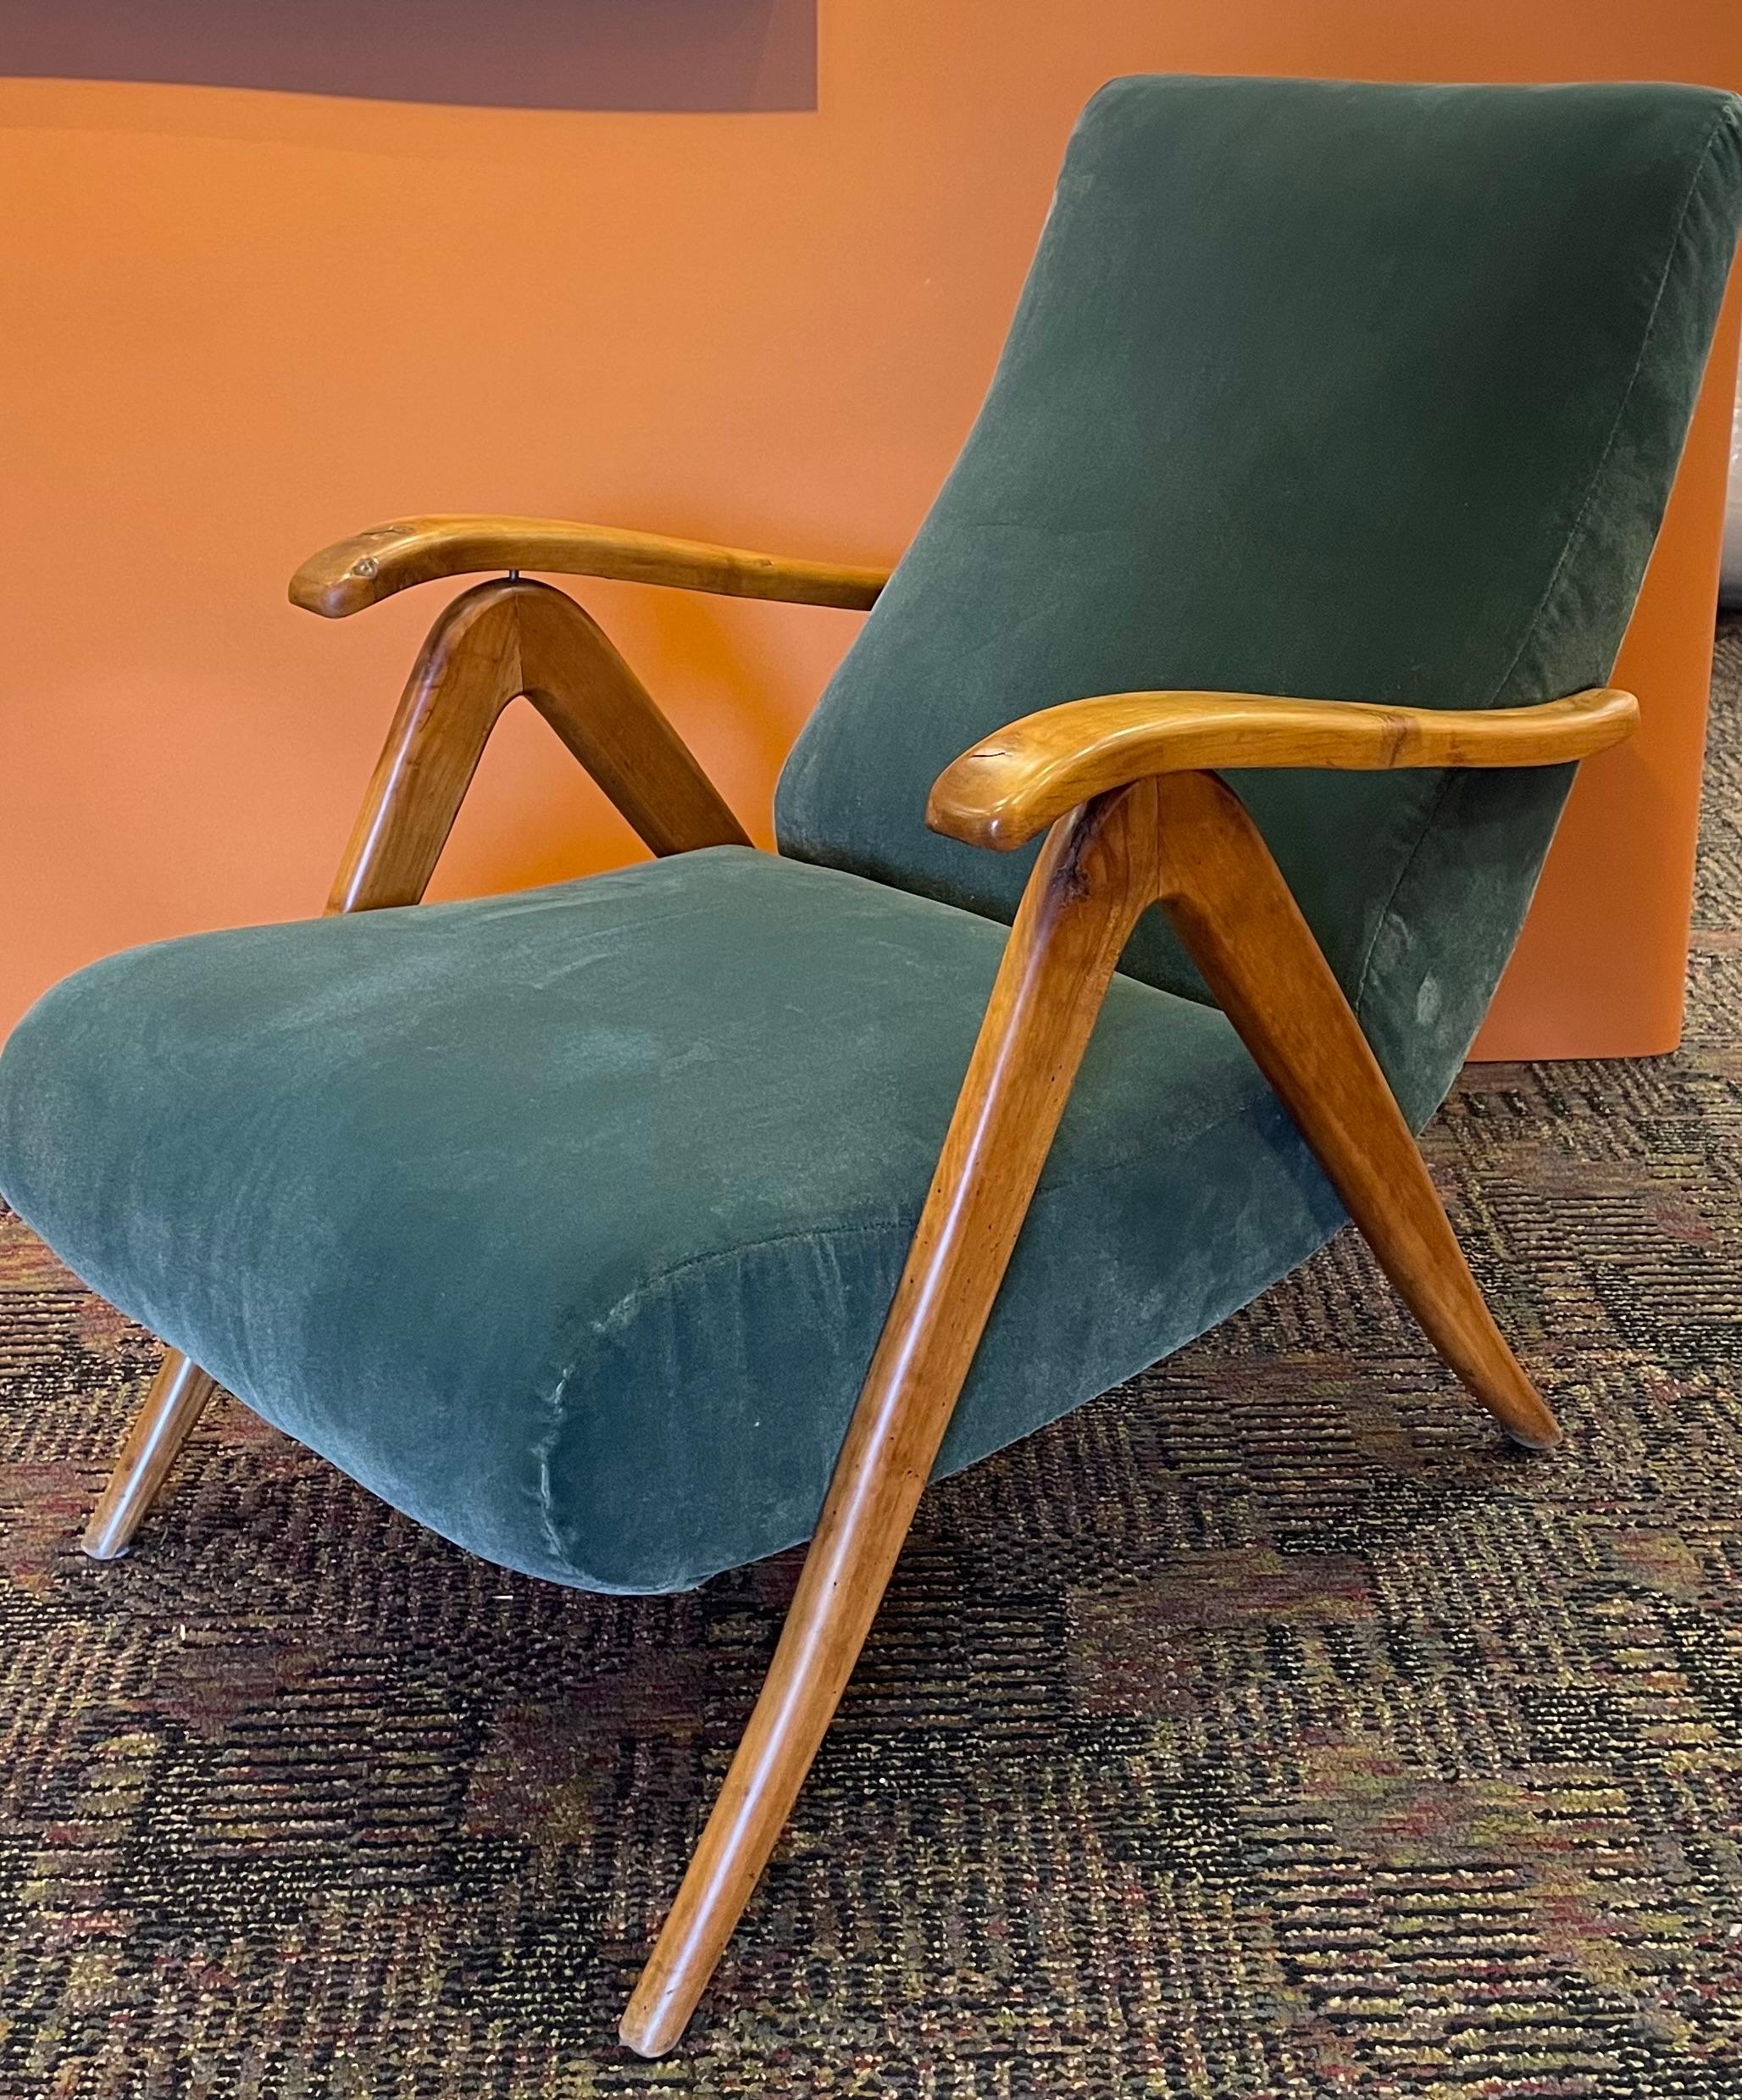 L'allure du design italien des années 1940 est immédiatement évidente dans ce fauteuil inclinable à deux positions. Une fois que je l'ai essayé, je n'ai plus voulu en bouger.  C'est un must-have pour la personne qui a porté l'art de la détente à de